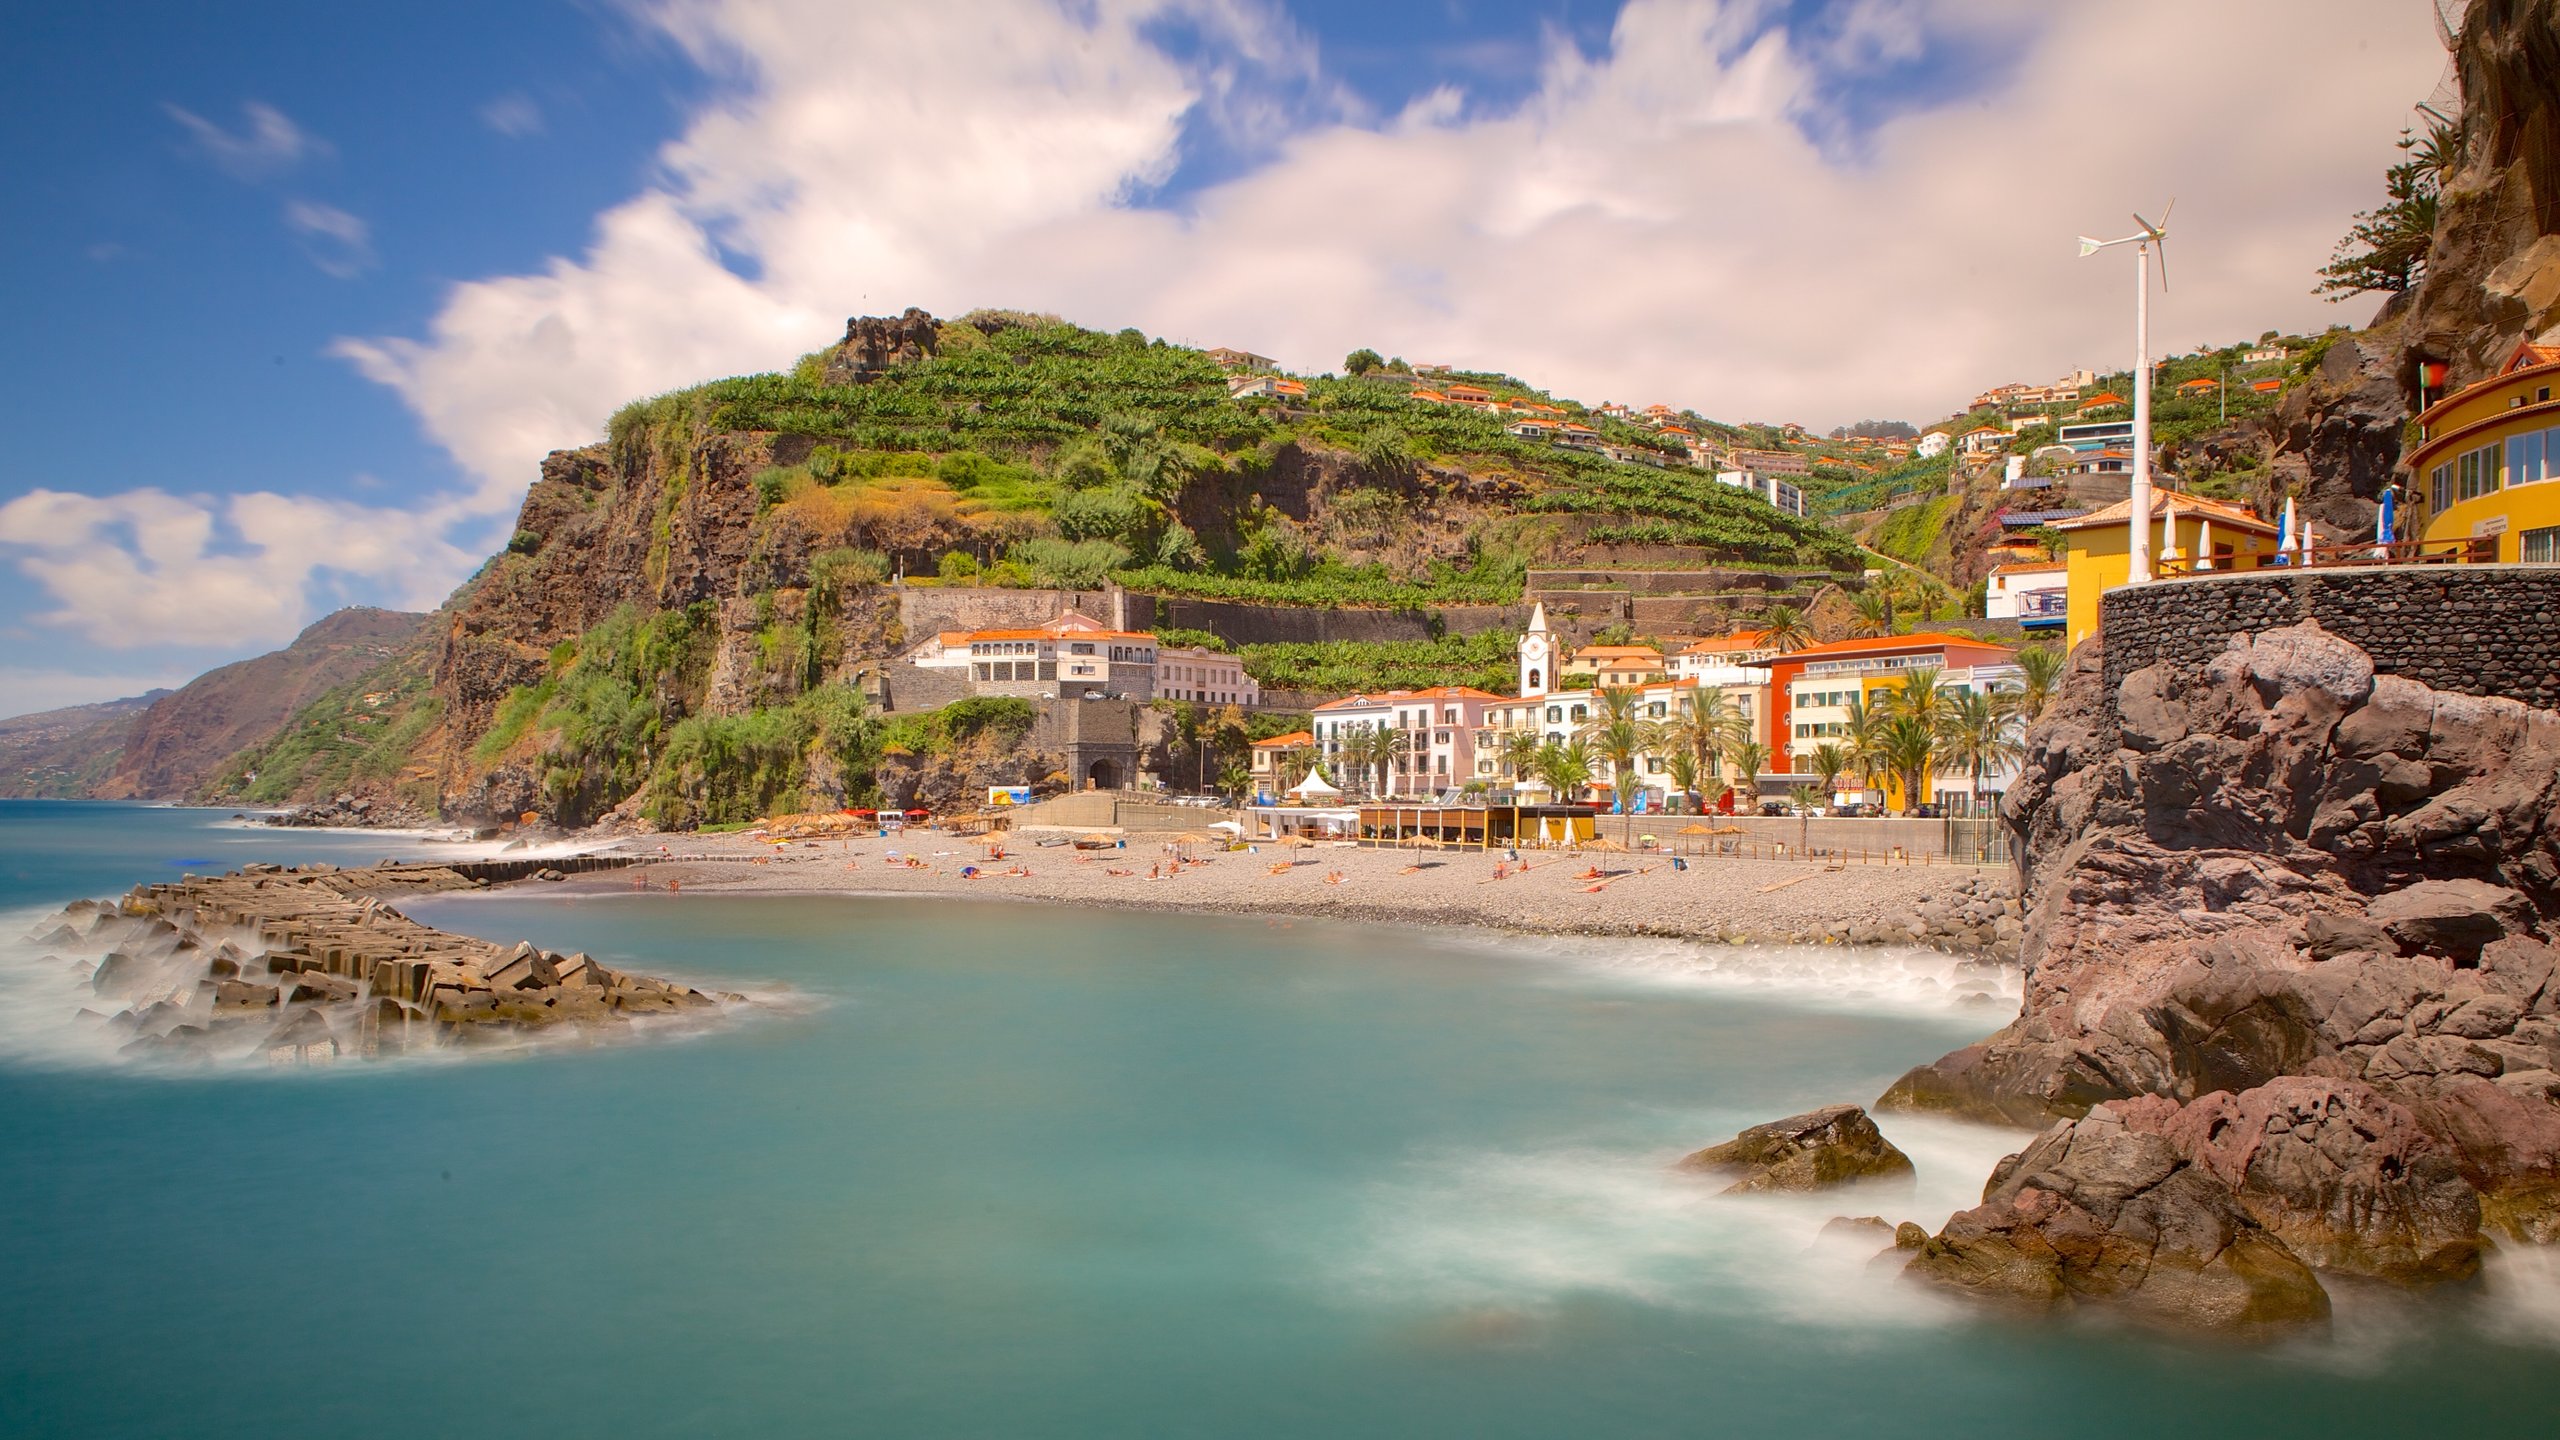 Descubrimientos y colonizaciones (1): El archipiélago de Madeira